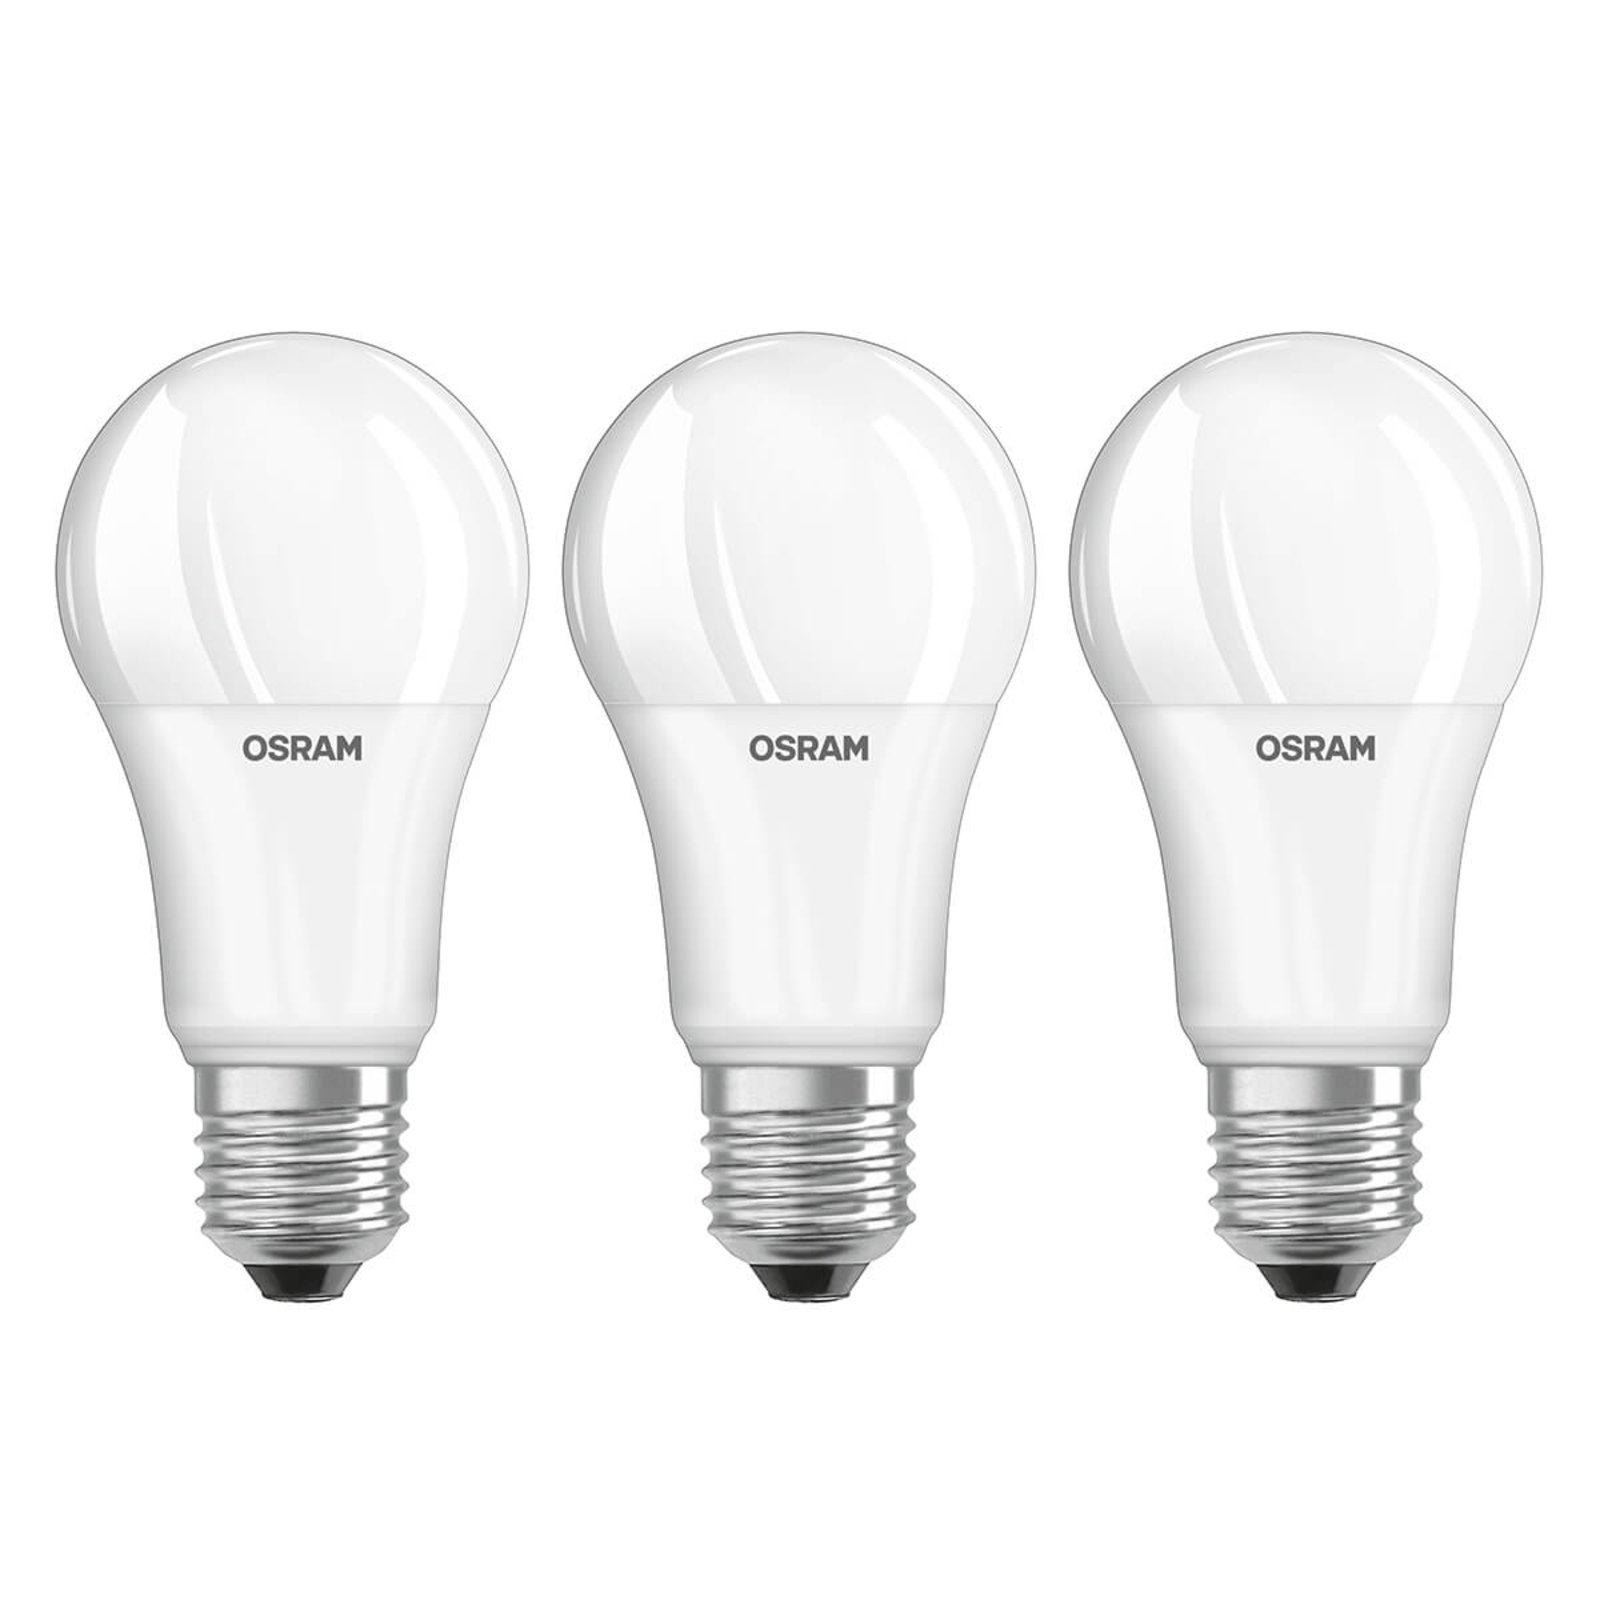 LED lempa E27 13W, universali balta, 3 vnt